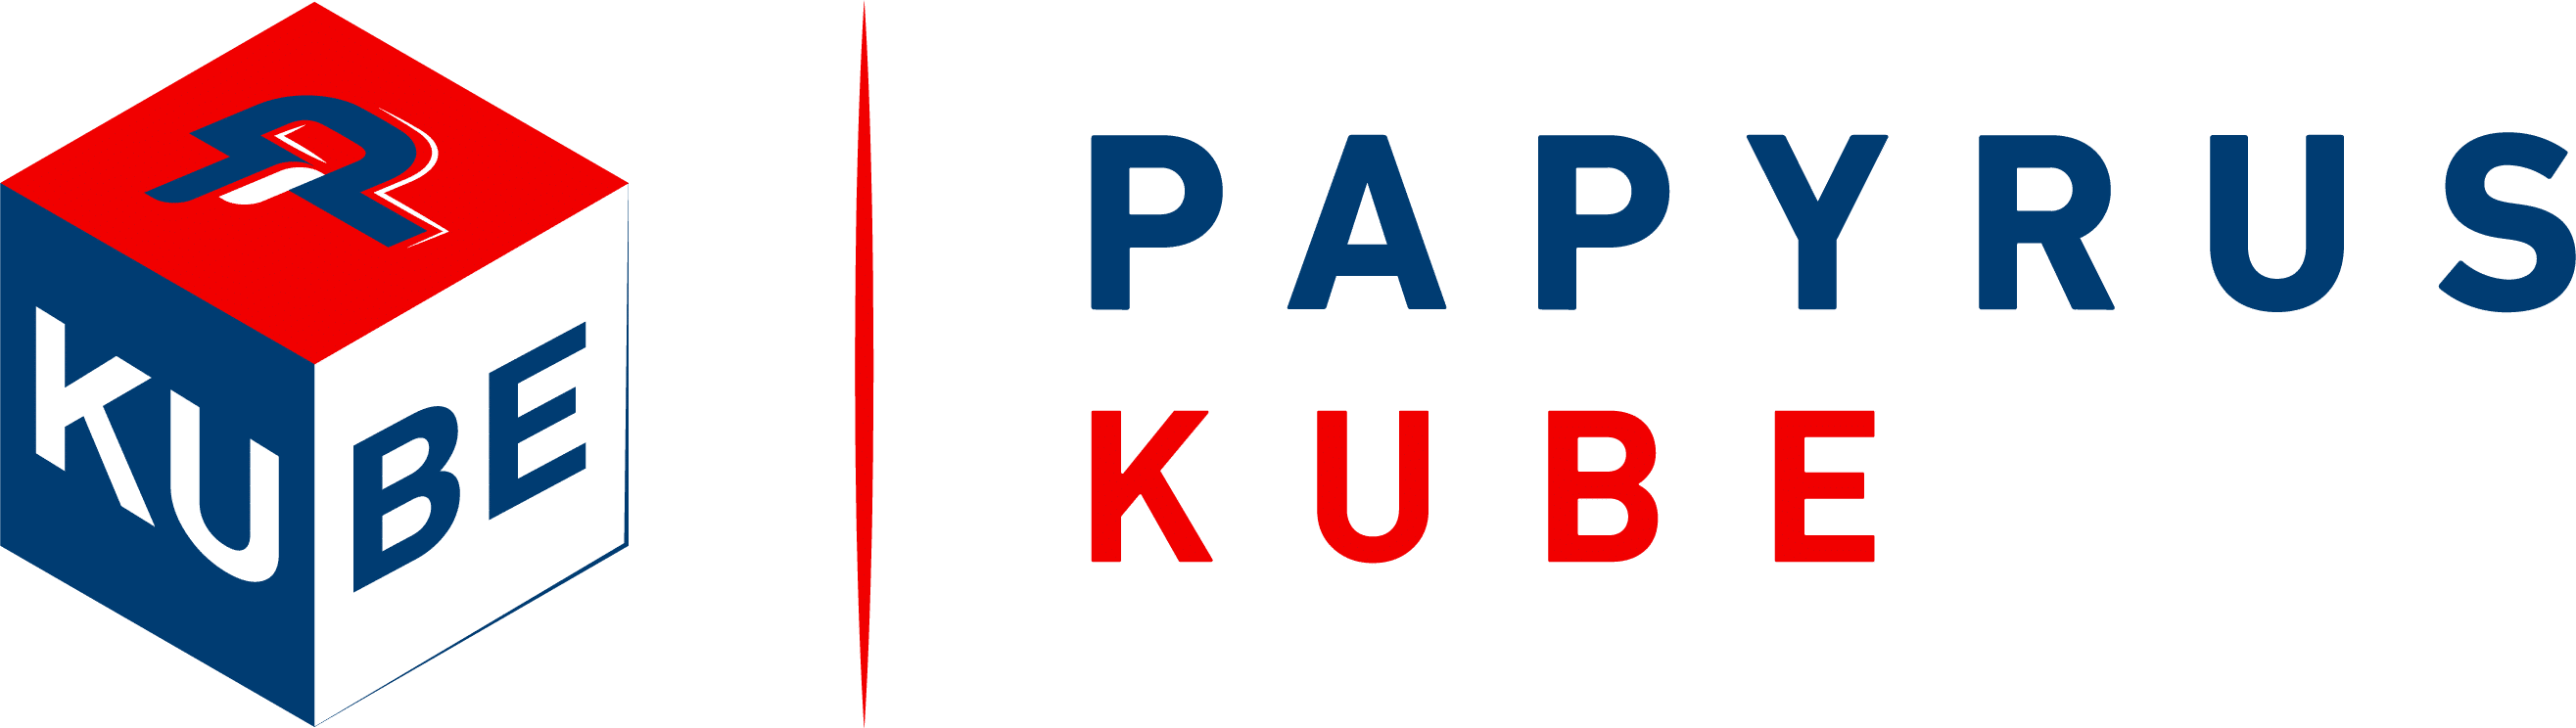 papyrus kube